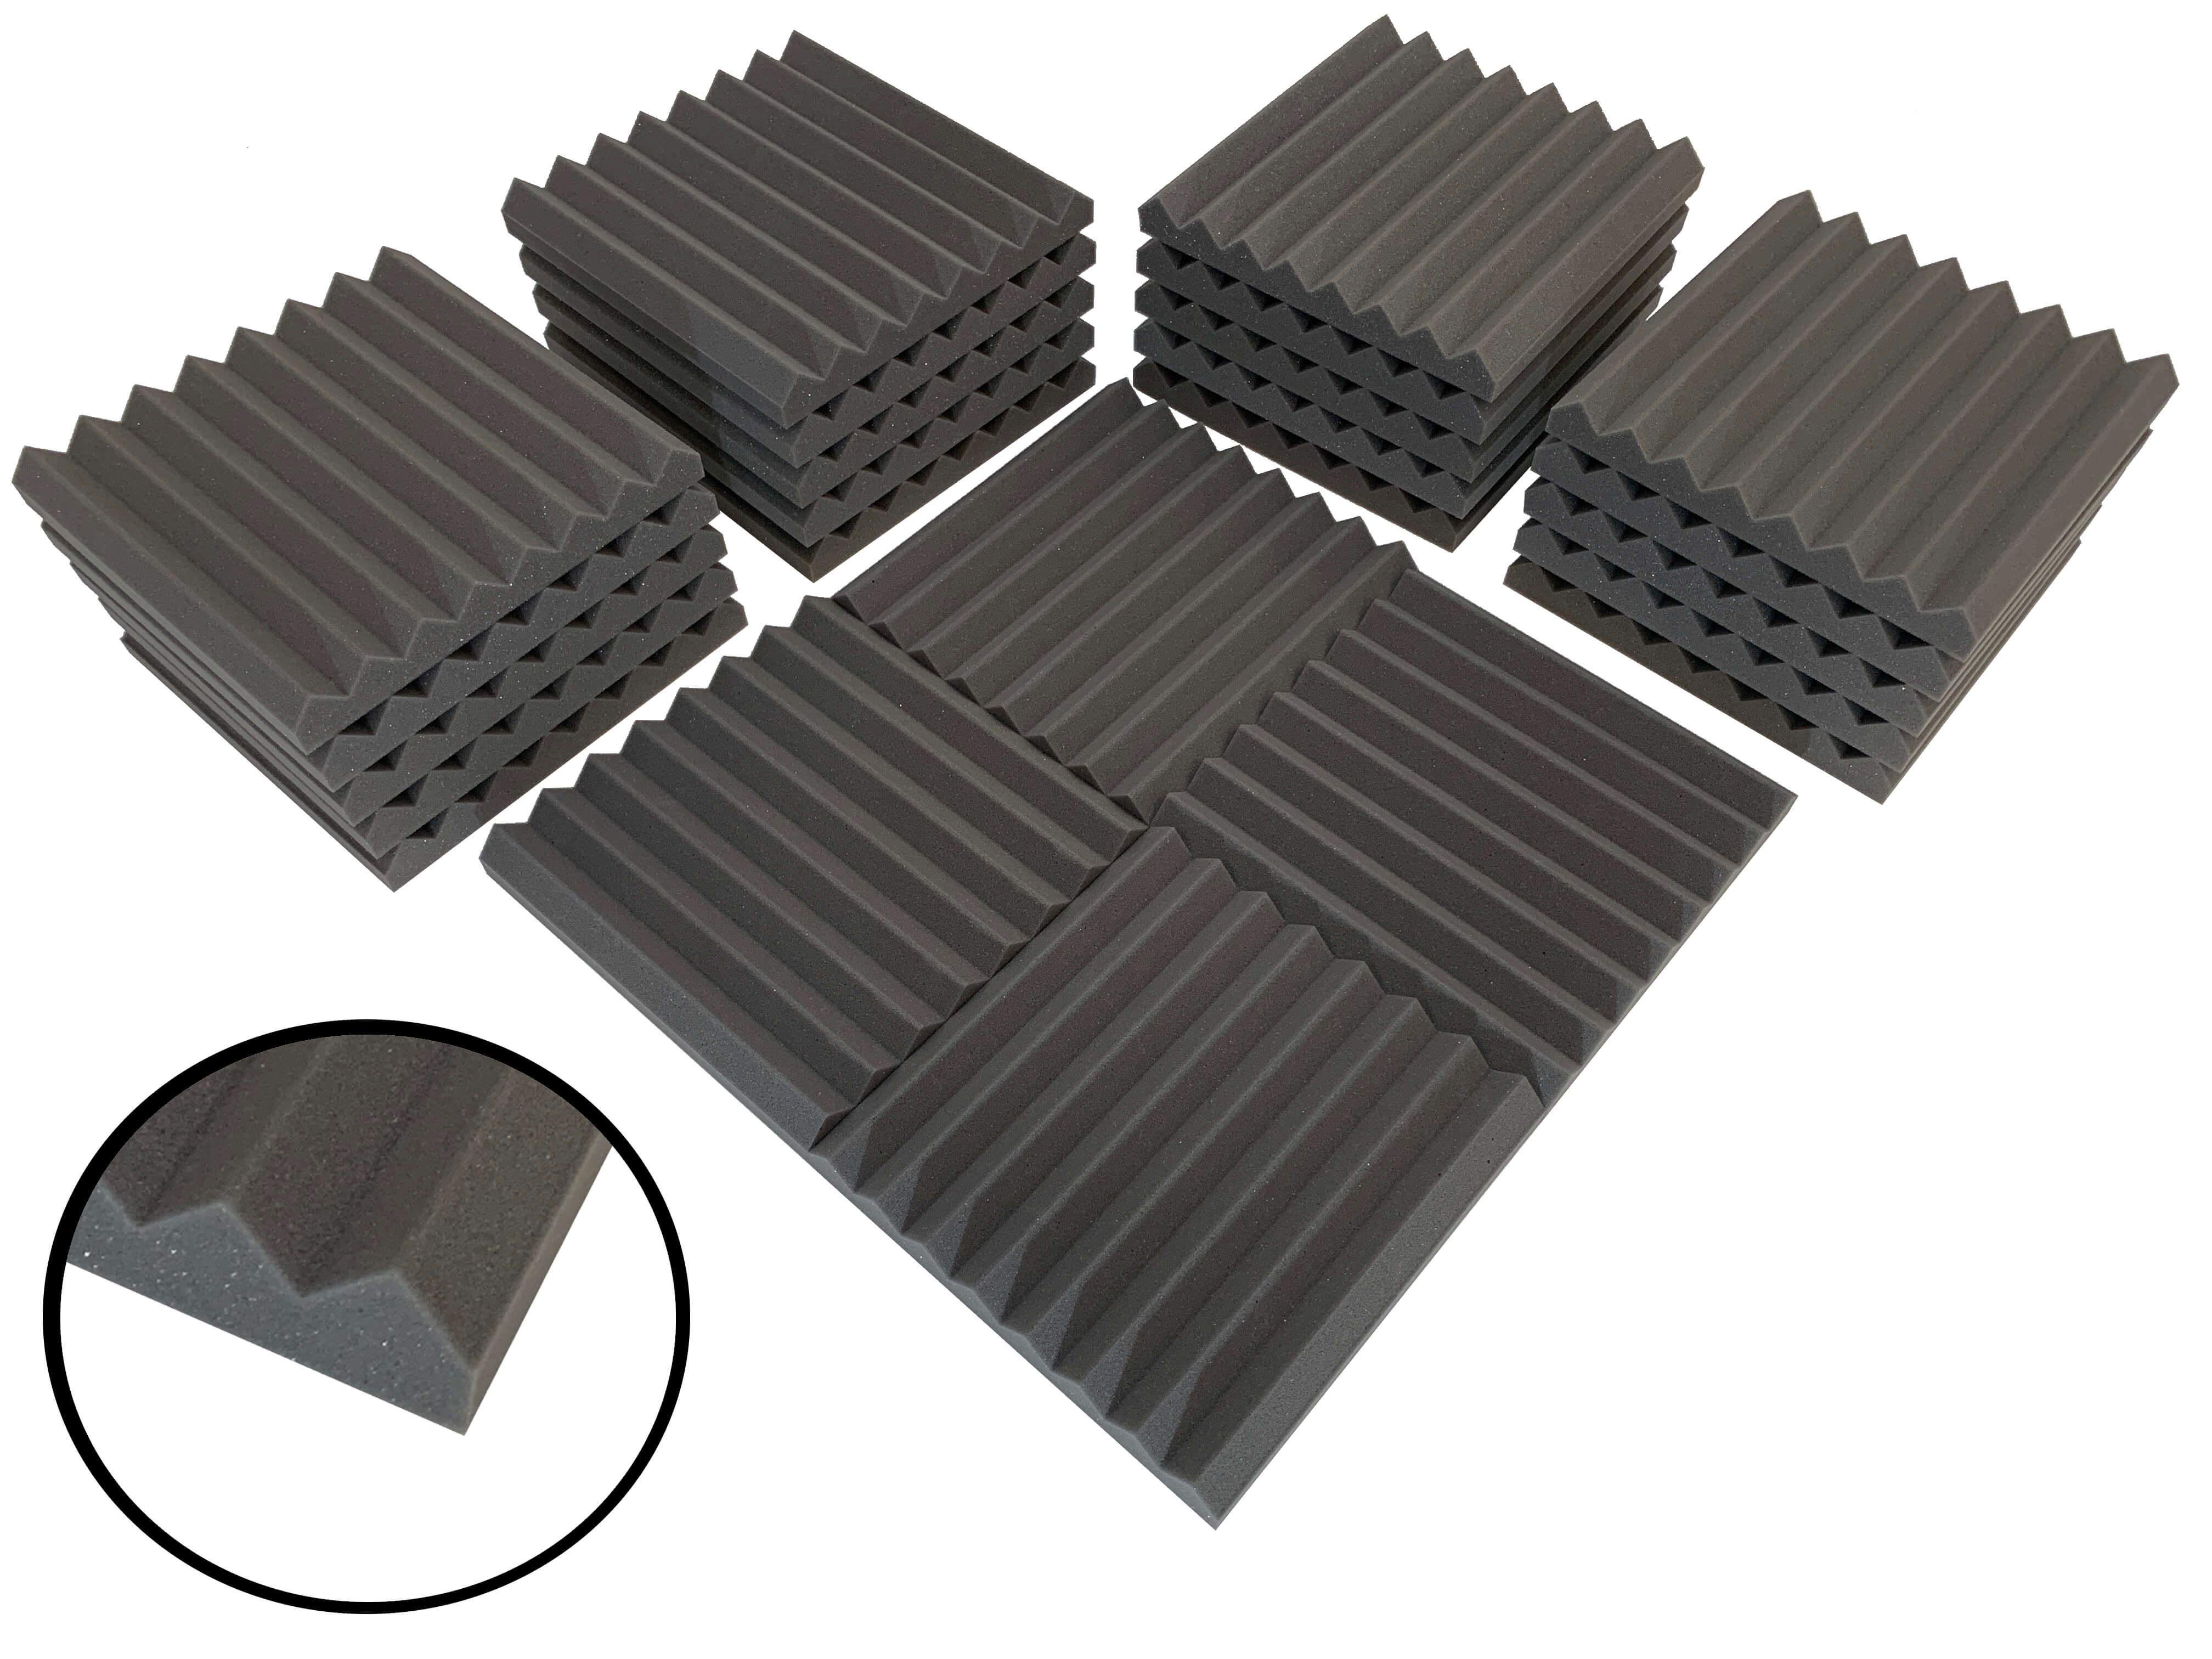 Wedge 12" Acoustic Studio Foam Tile Pack